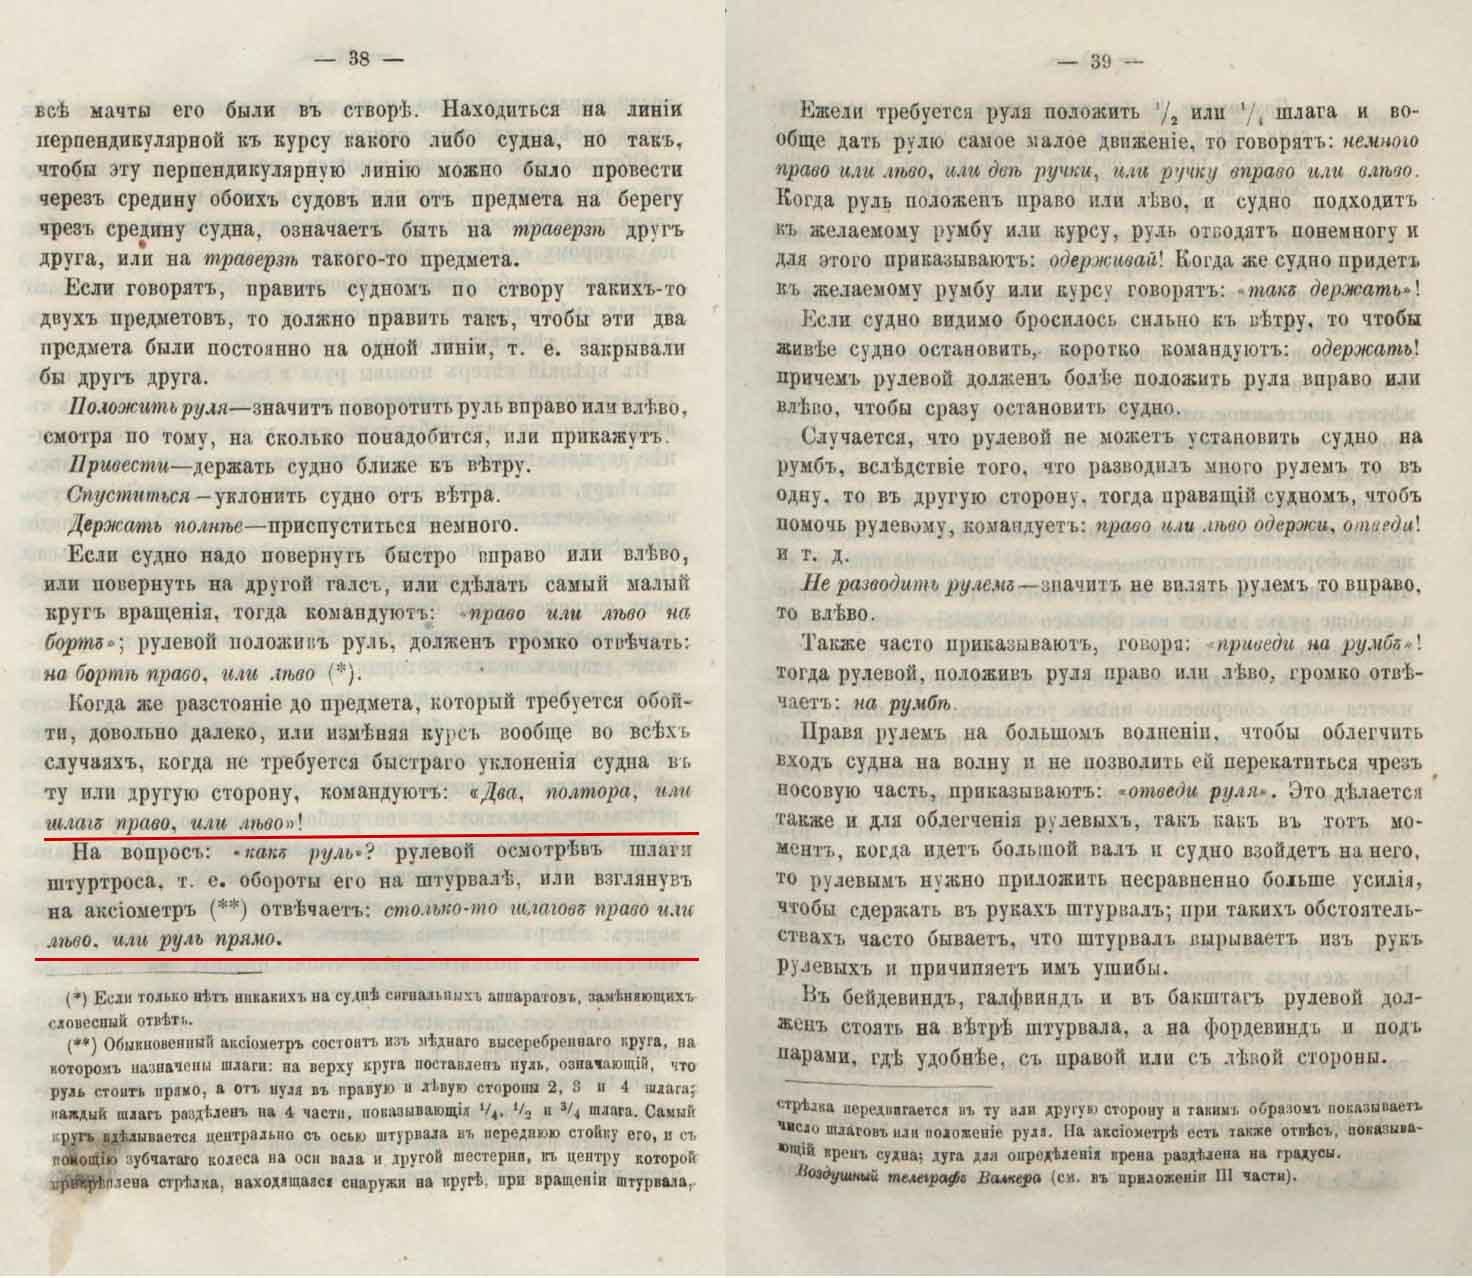 Кол-во шлагов стр 38-39 МП Федорович Часть 3 - 1877.jpg